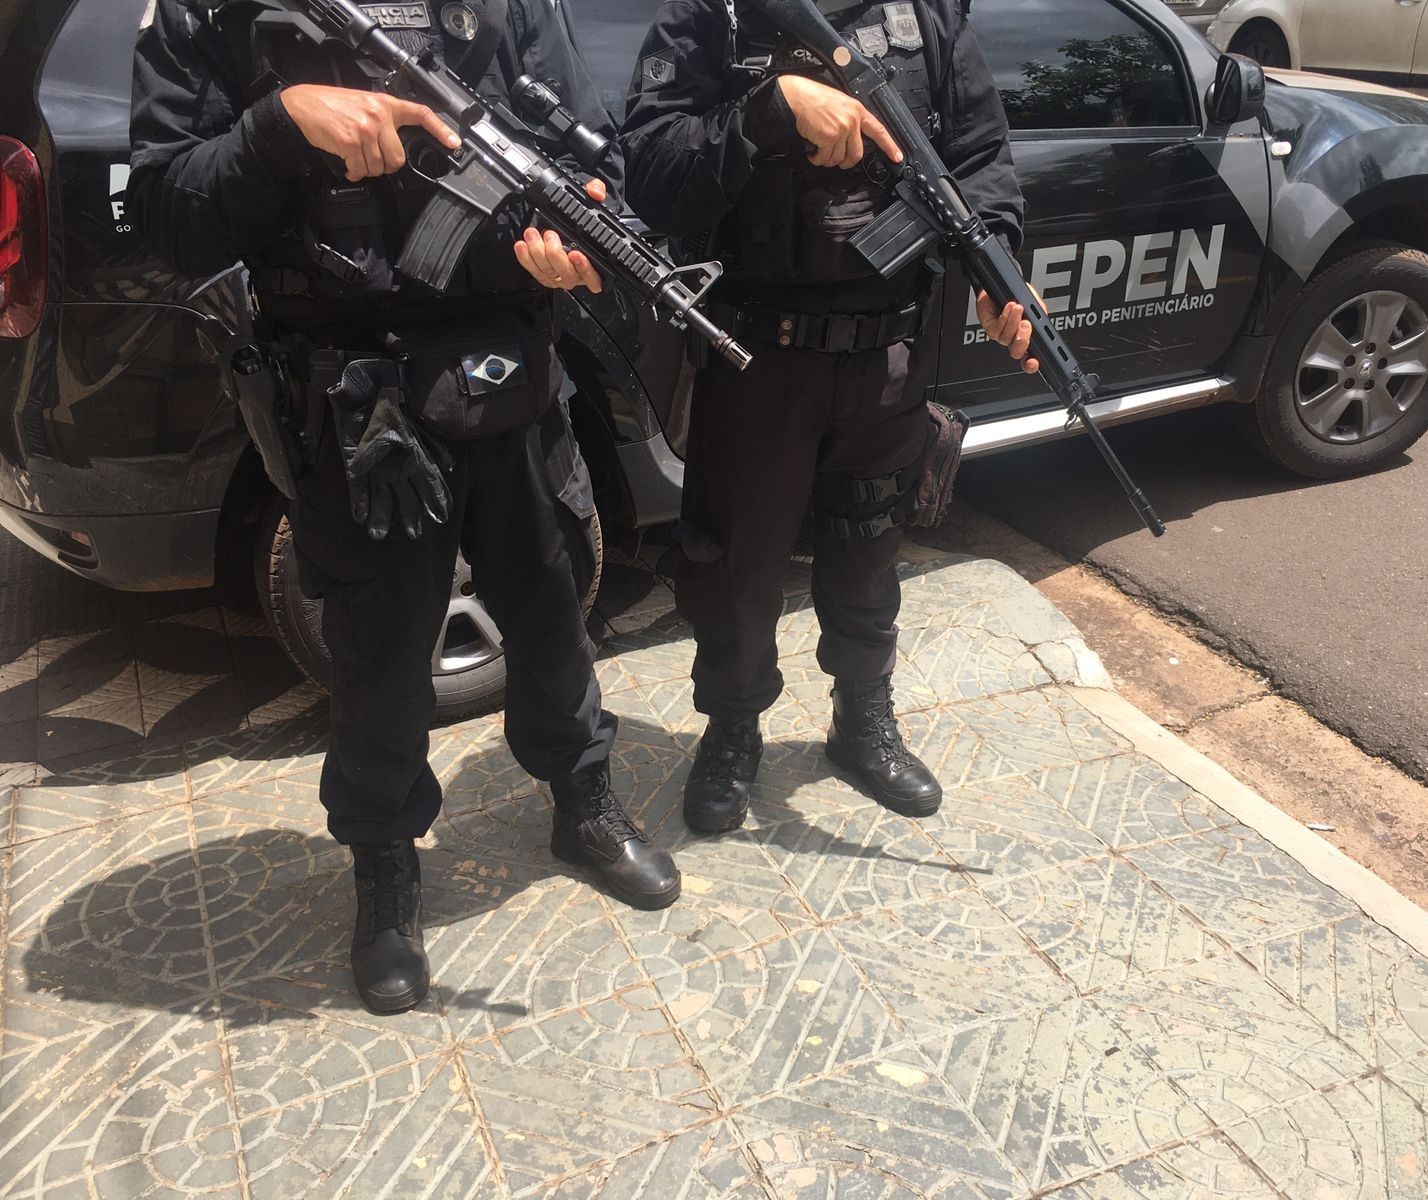 Departamento de Polícia Penal do Paraná (Deppen) faz rondas em unidades prisionais